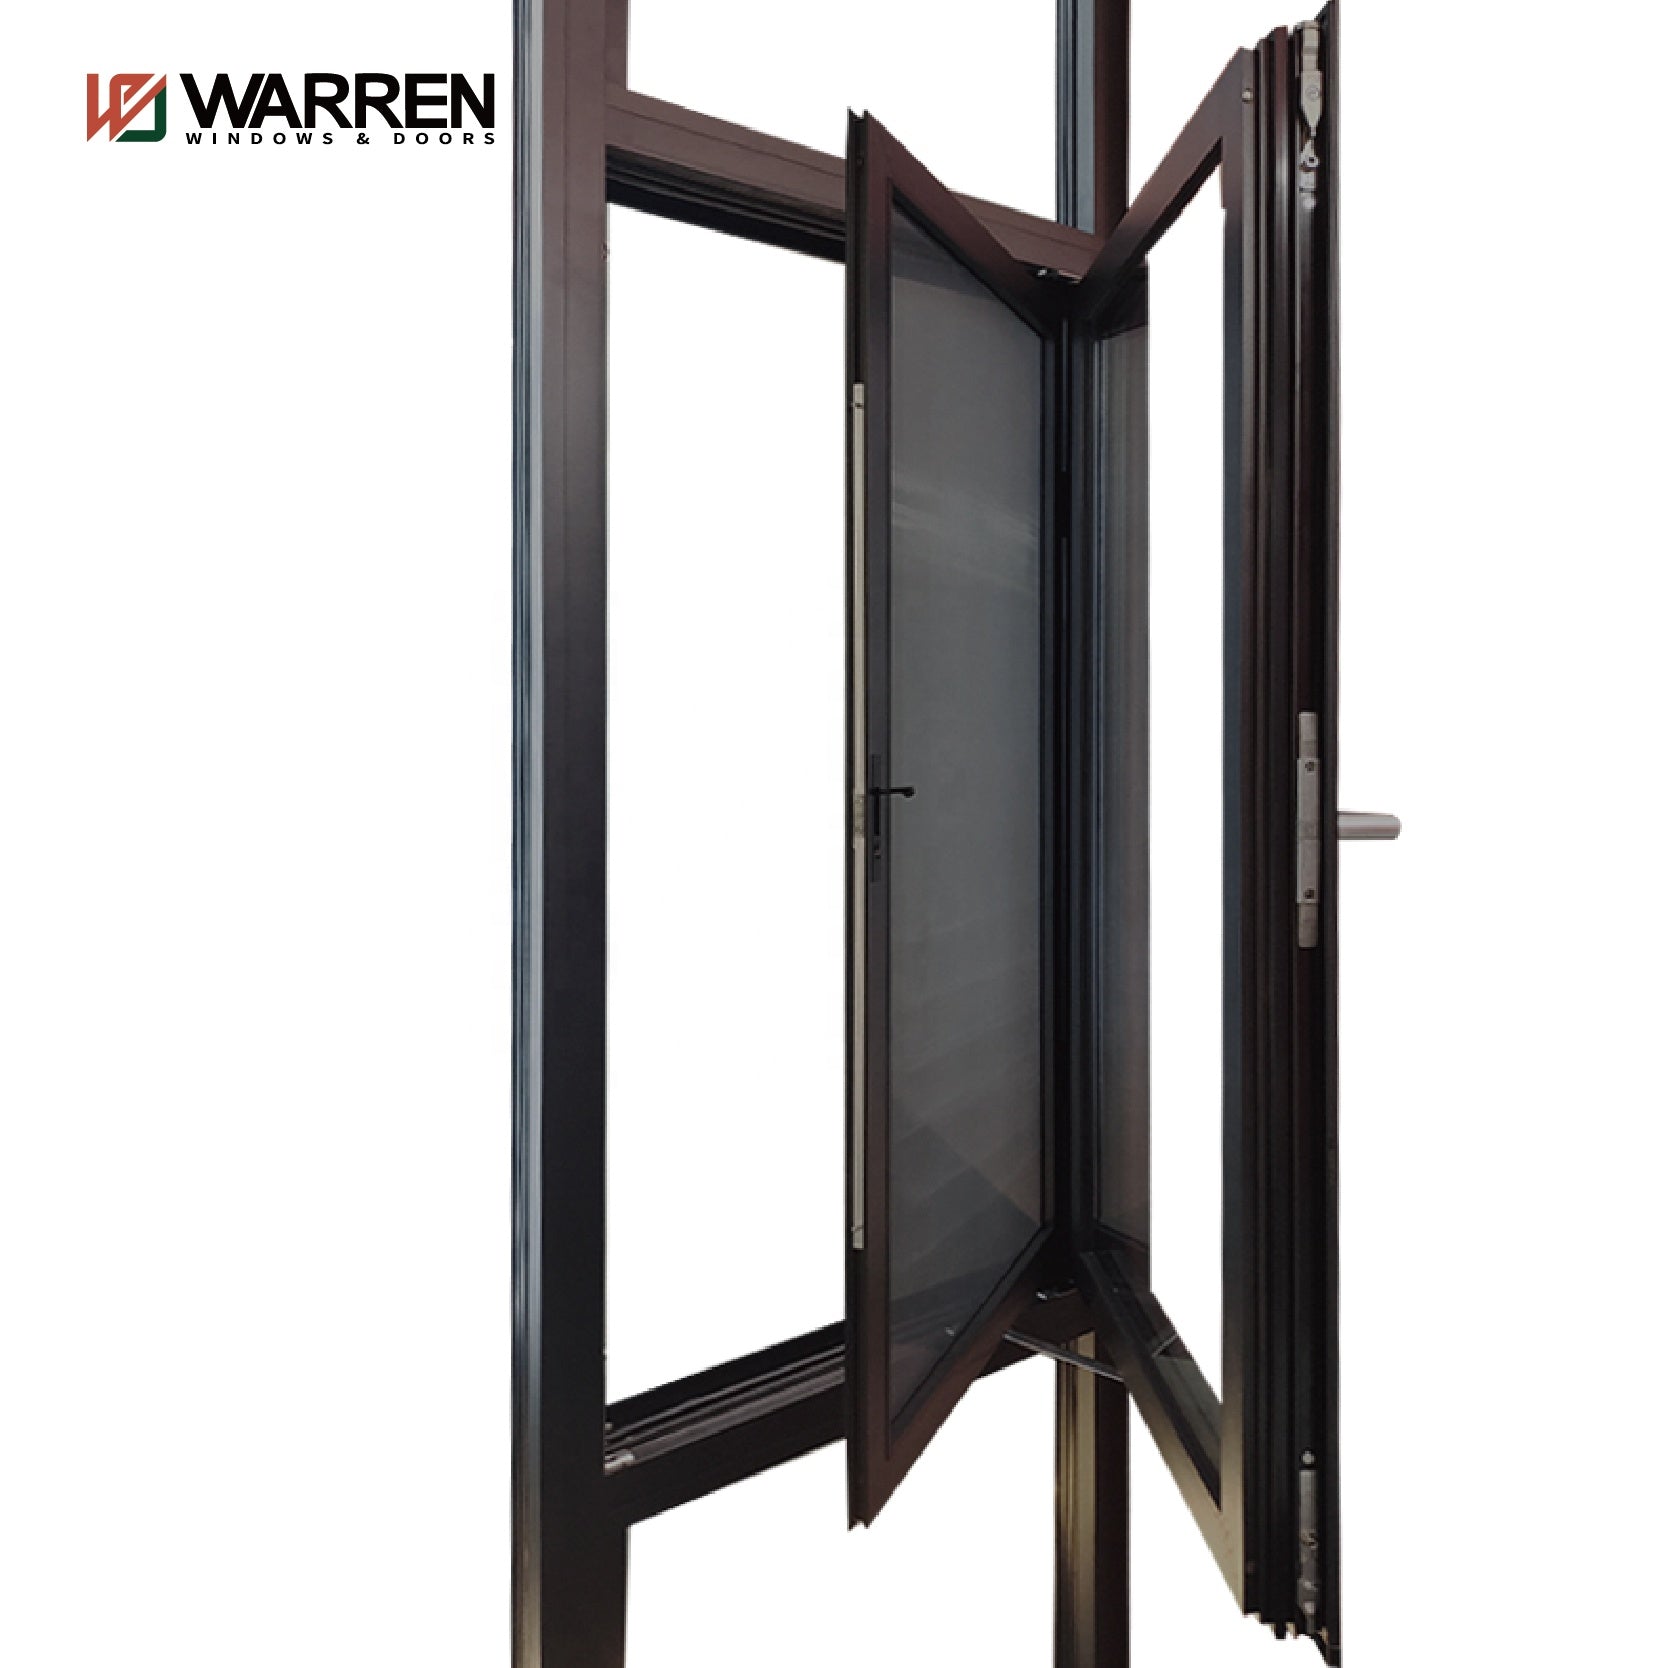 Warren 24x60 casement window aluminium thermal break 6060-T66 patio glass